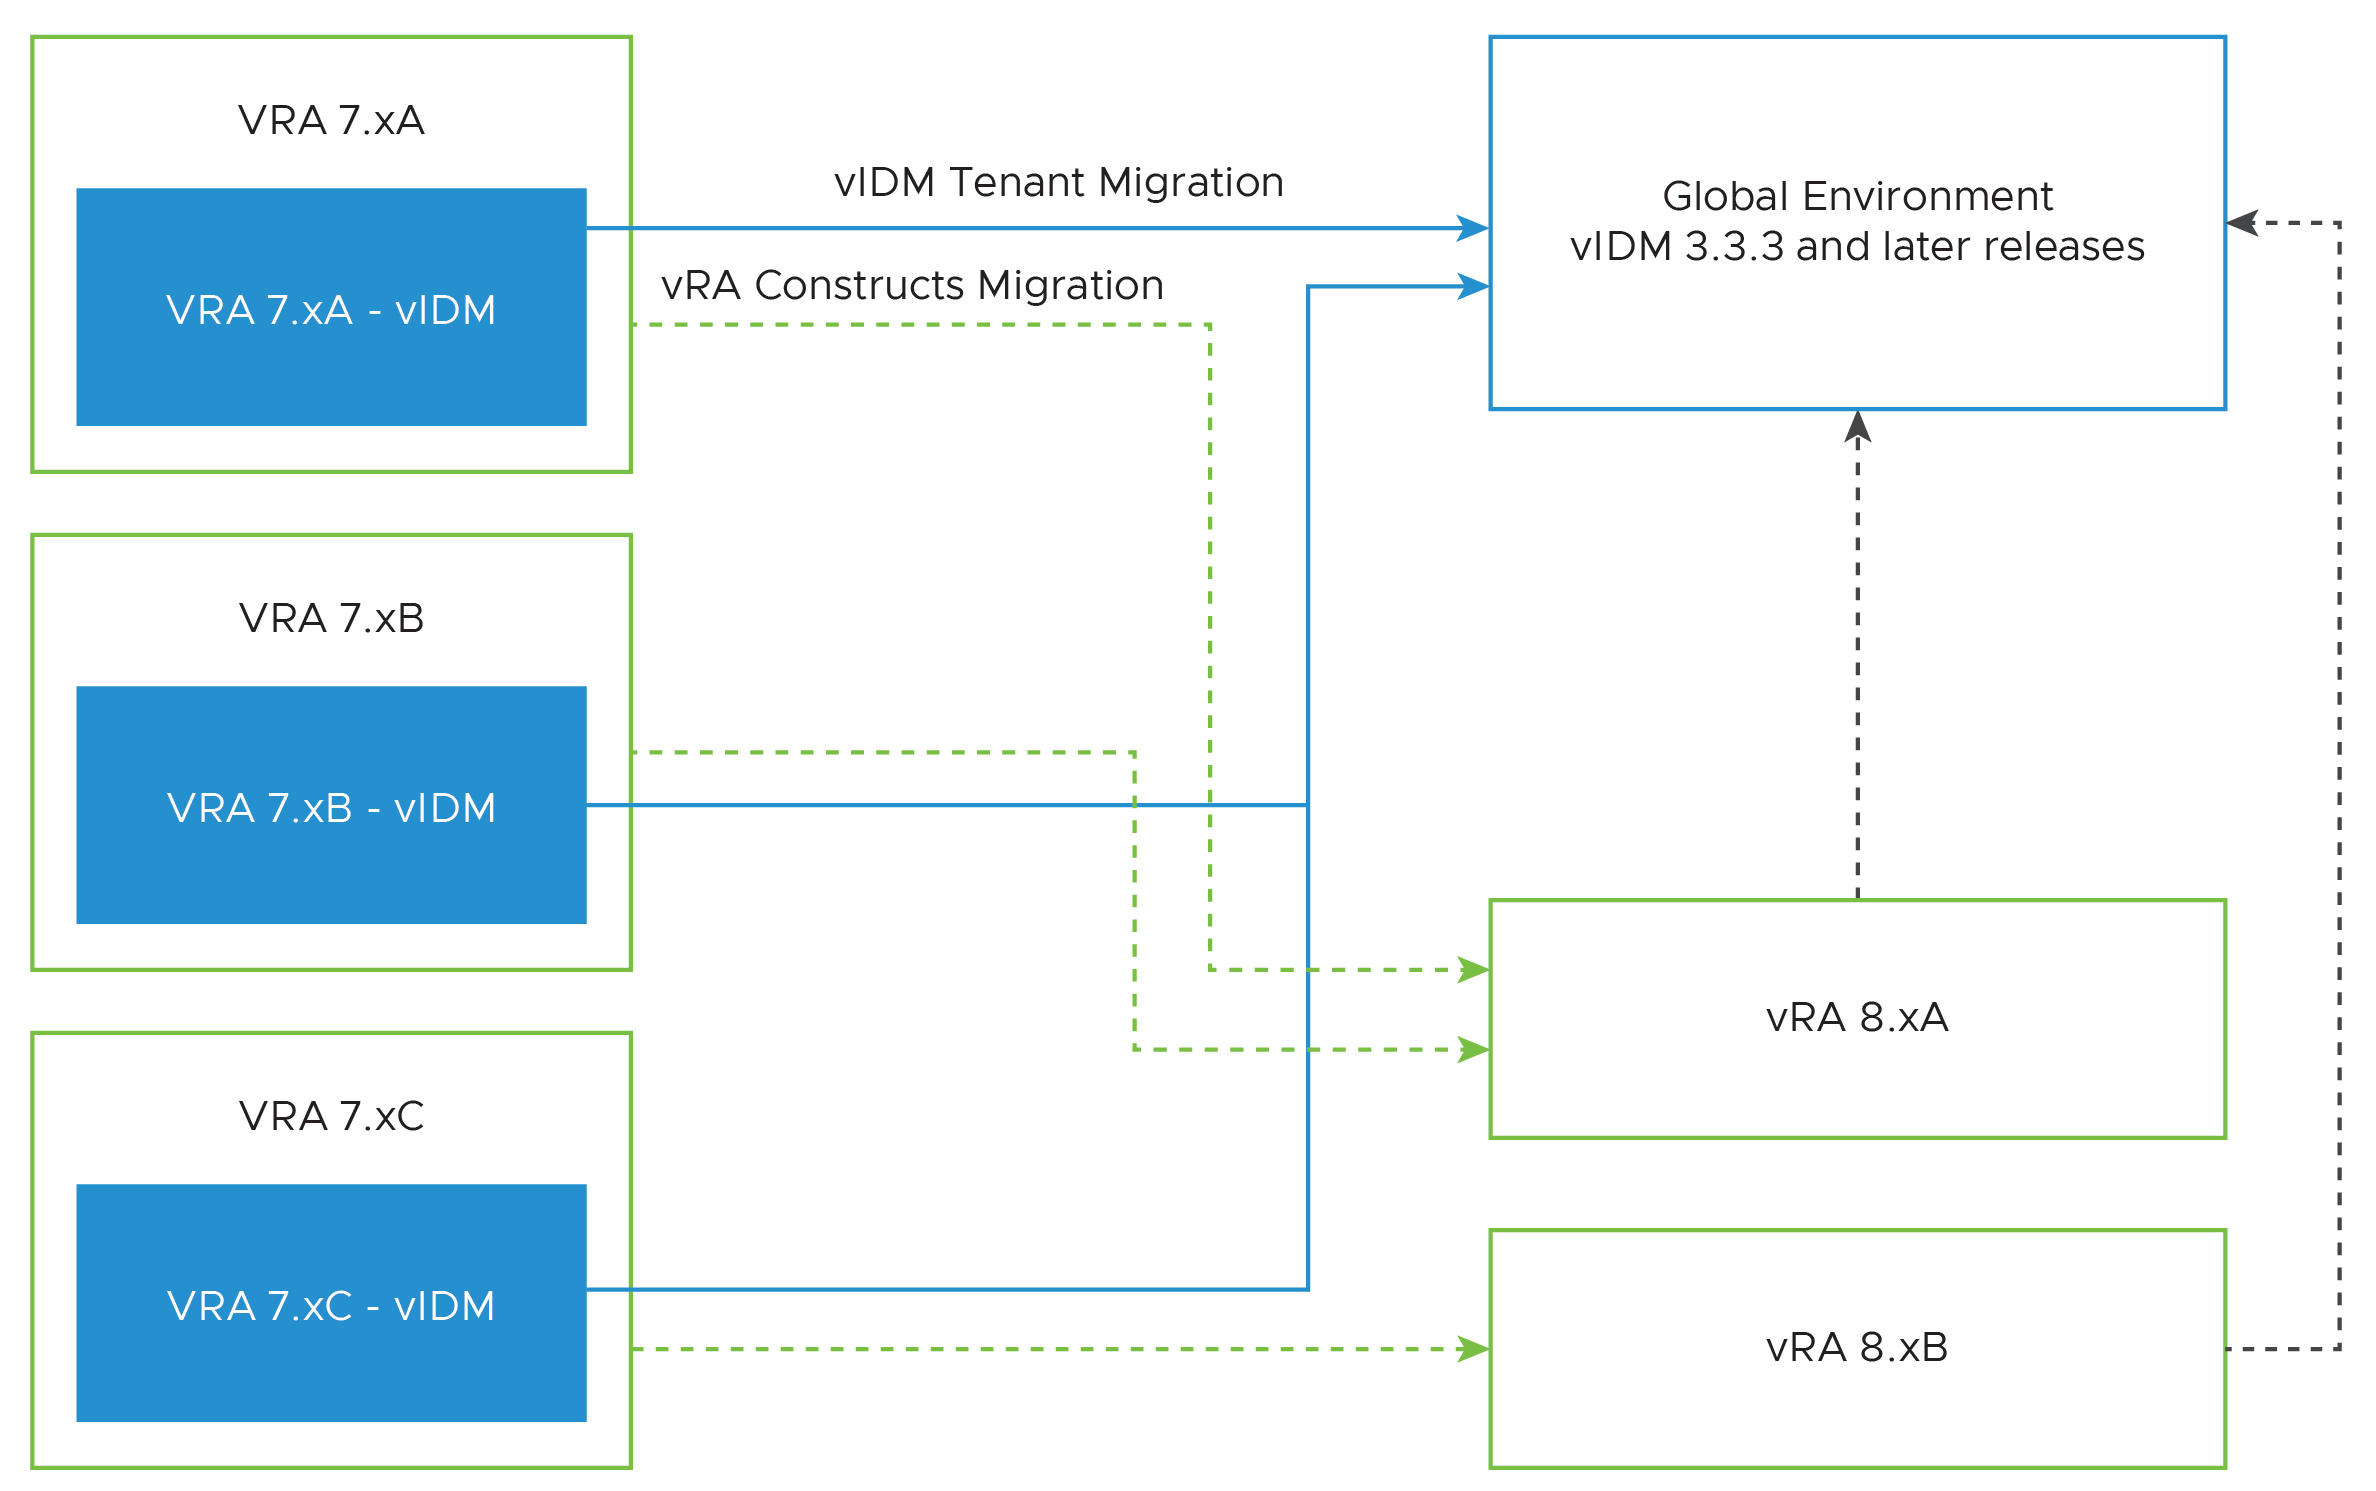 Um diagrama de como os tenants são migrados usando o VMware Aria Suite Lifecycle. Os tenants do vRA 7.x são migrados para um ambiente global por meio do Workspace One (o antigo vIDM). Ao mesmo tempo, o VMware Aria Automation cria uma migração criando tenants do 8.x a partir de tenants do vRA 7.x.